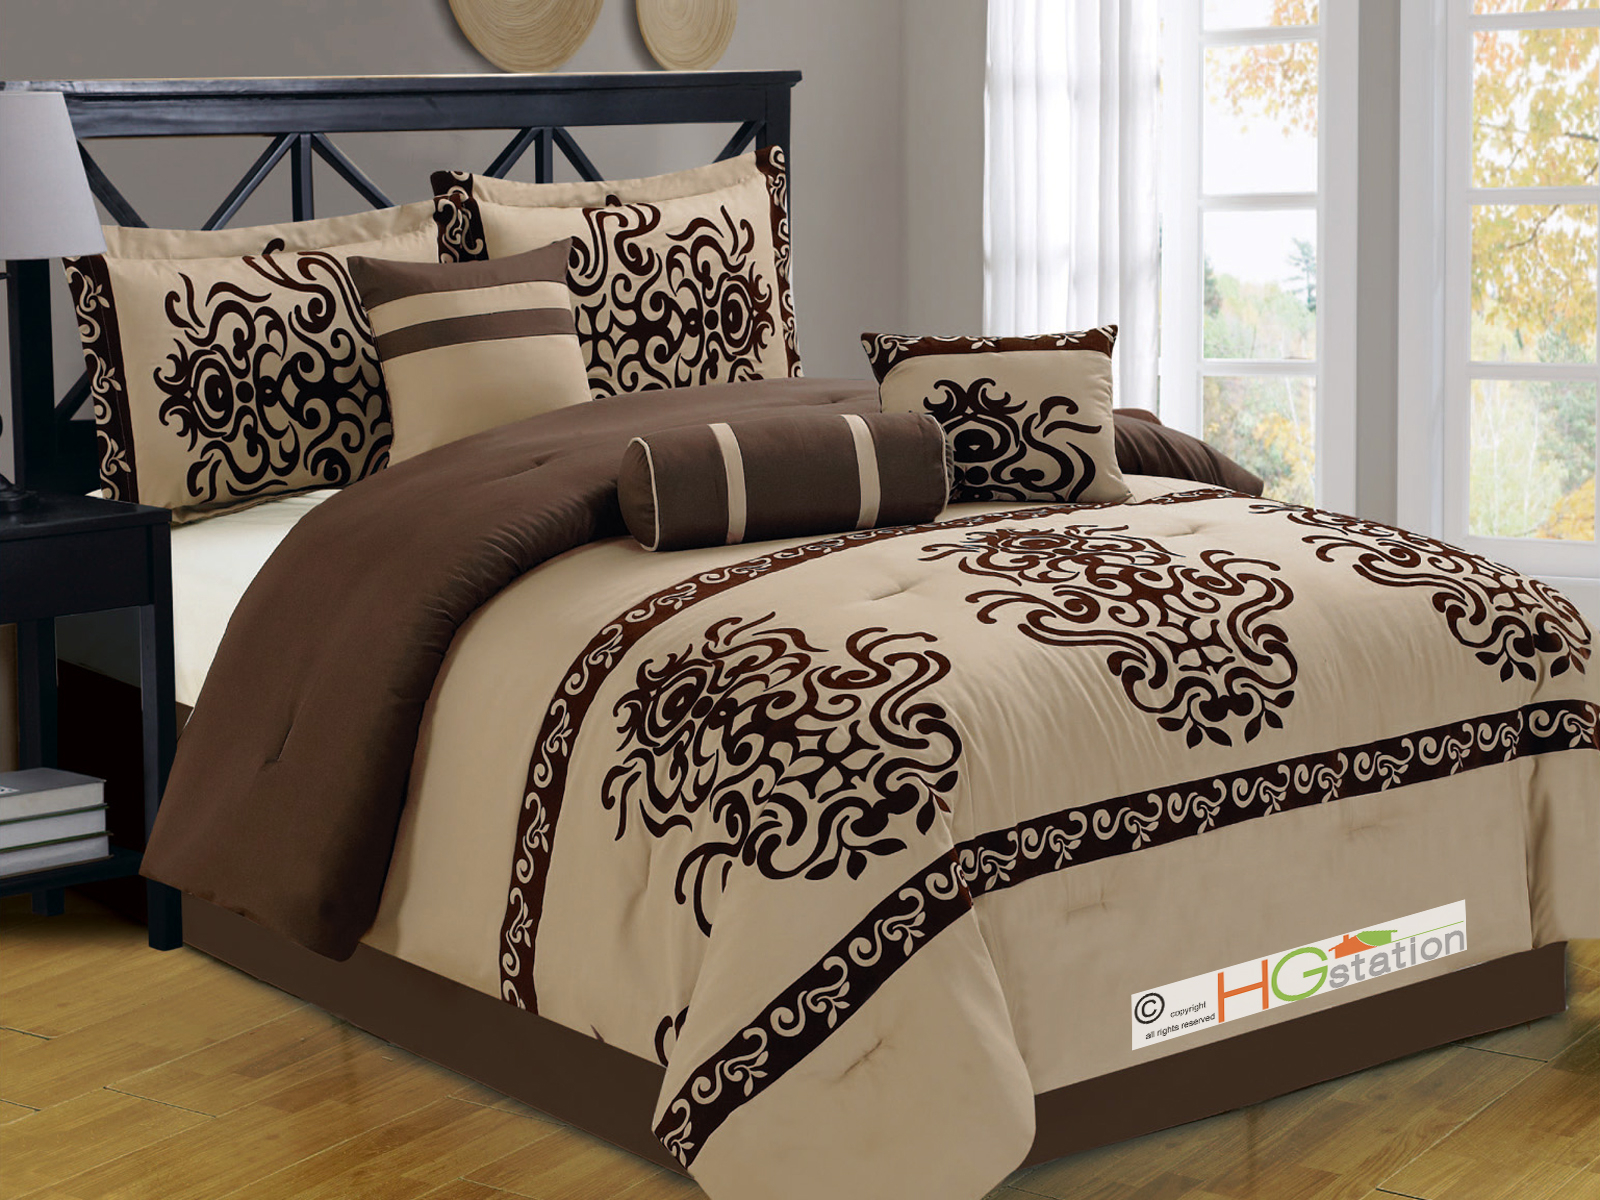 Oversized King Comforter Sets Visualhunt, Oversized Comforter Sets For King Bed